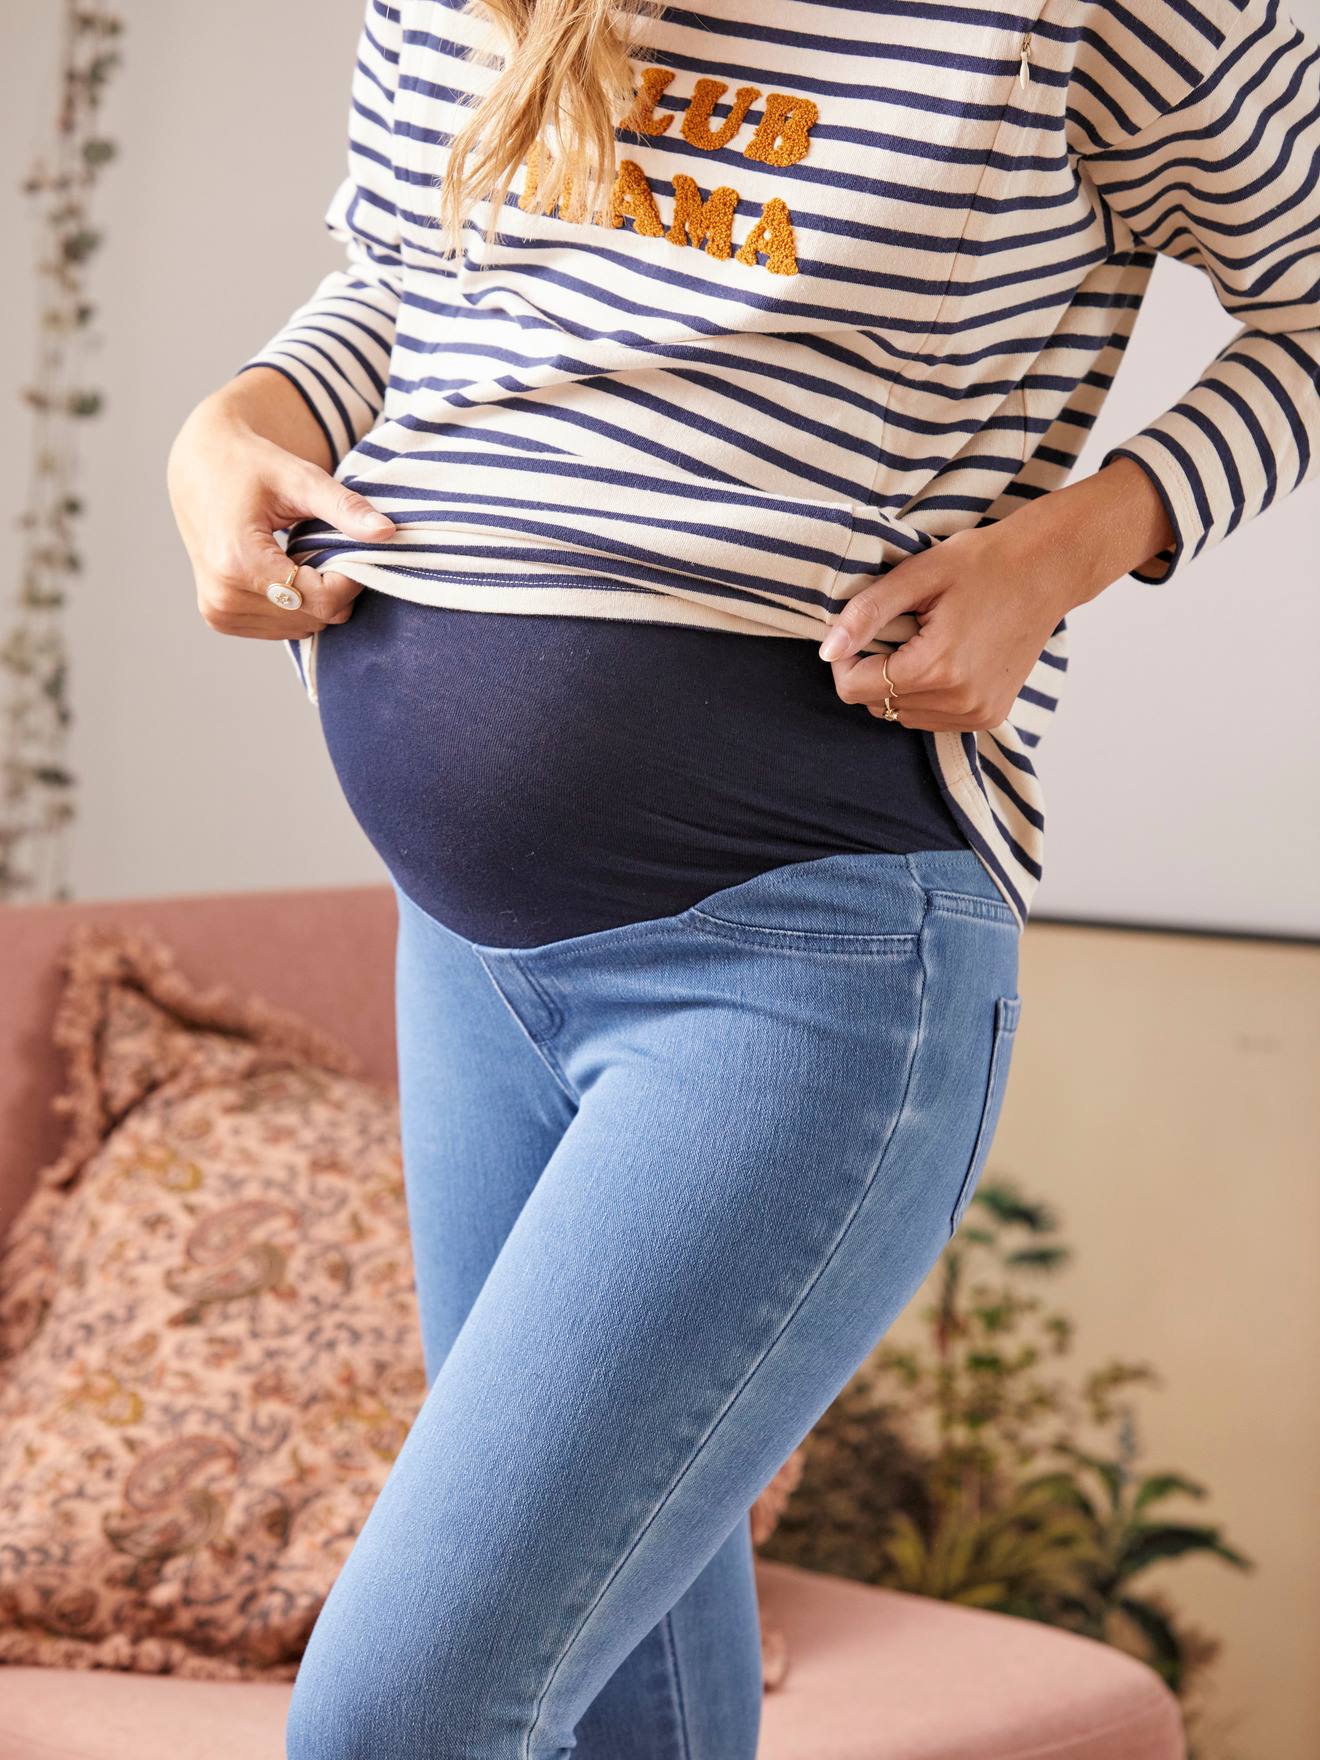 https://media.vertbaudet.com/Pictures/vertbaudet/244870/seamless-treggings-denim-effect-for-maternity.jpg